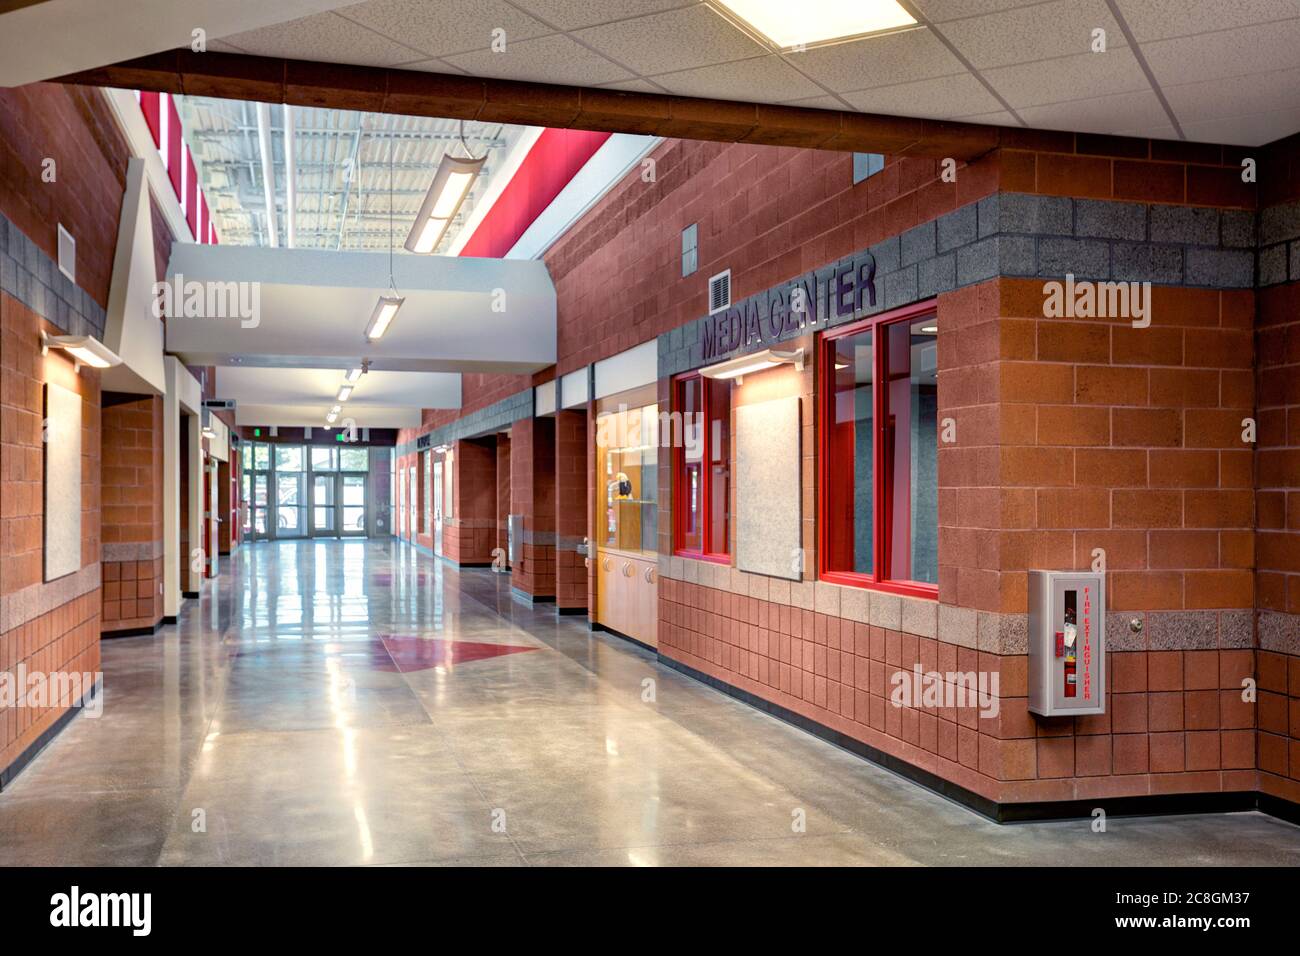 El pasillo principal en una escuela primaria, con materiales de construcción ahorradores de dinero, y accesorios de luz LED controlados por computadora de alta eficiencia. Foto de stock